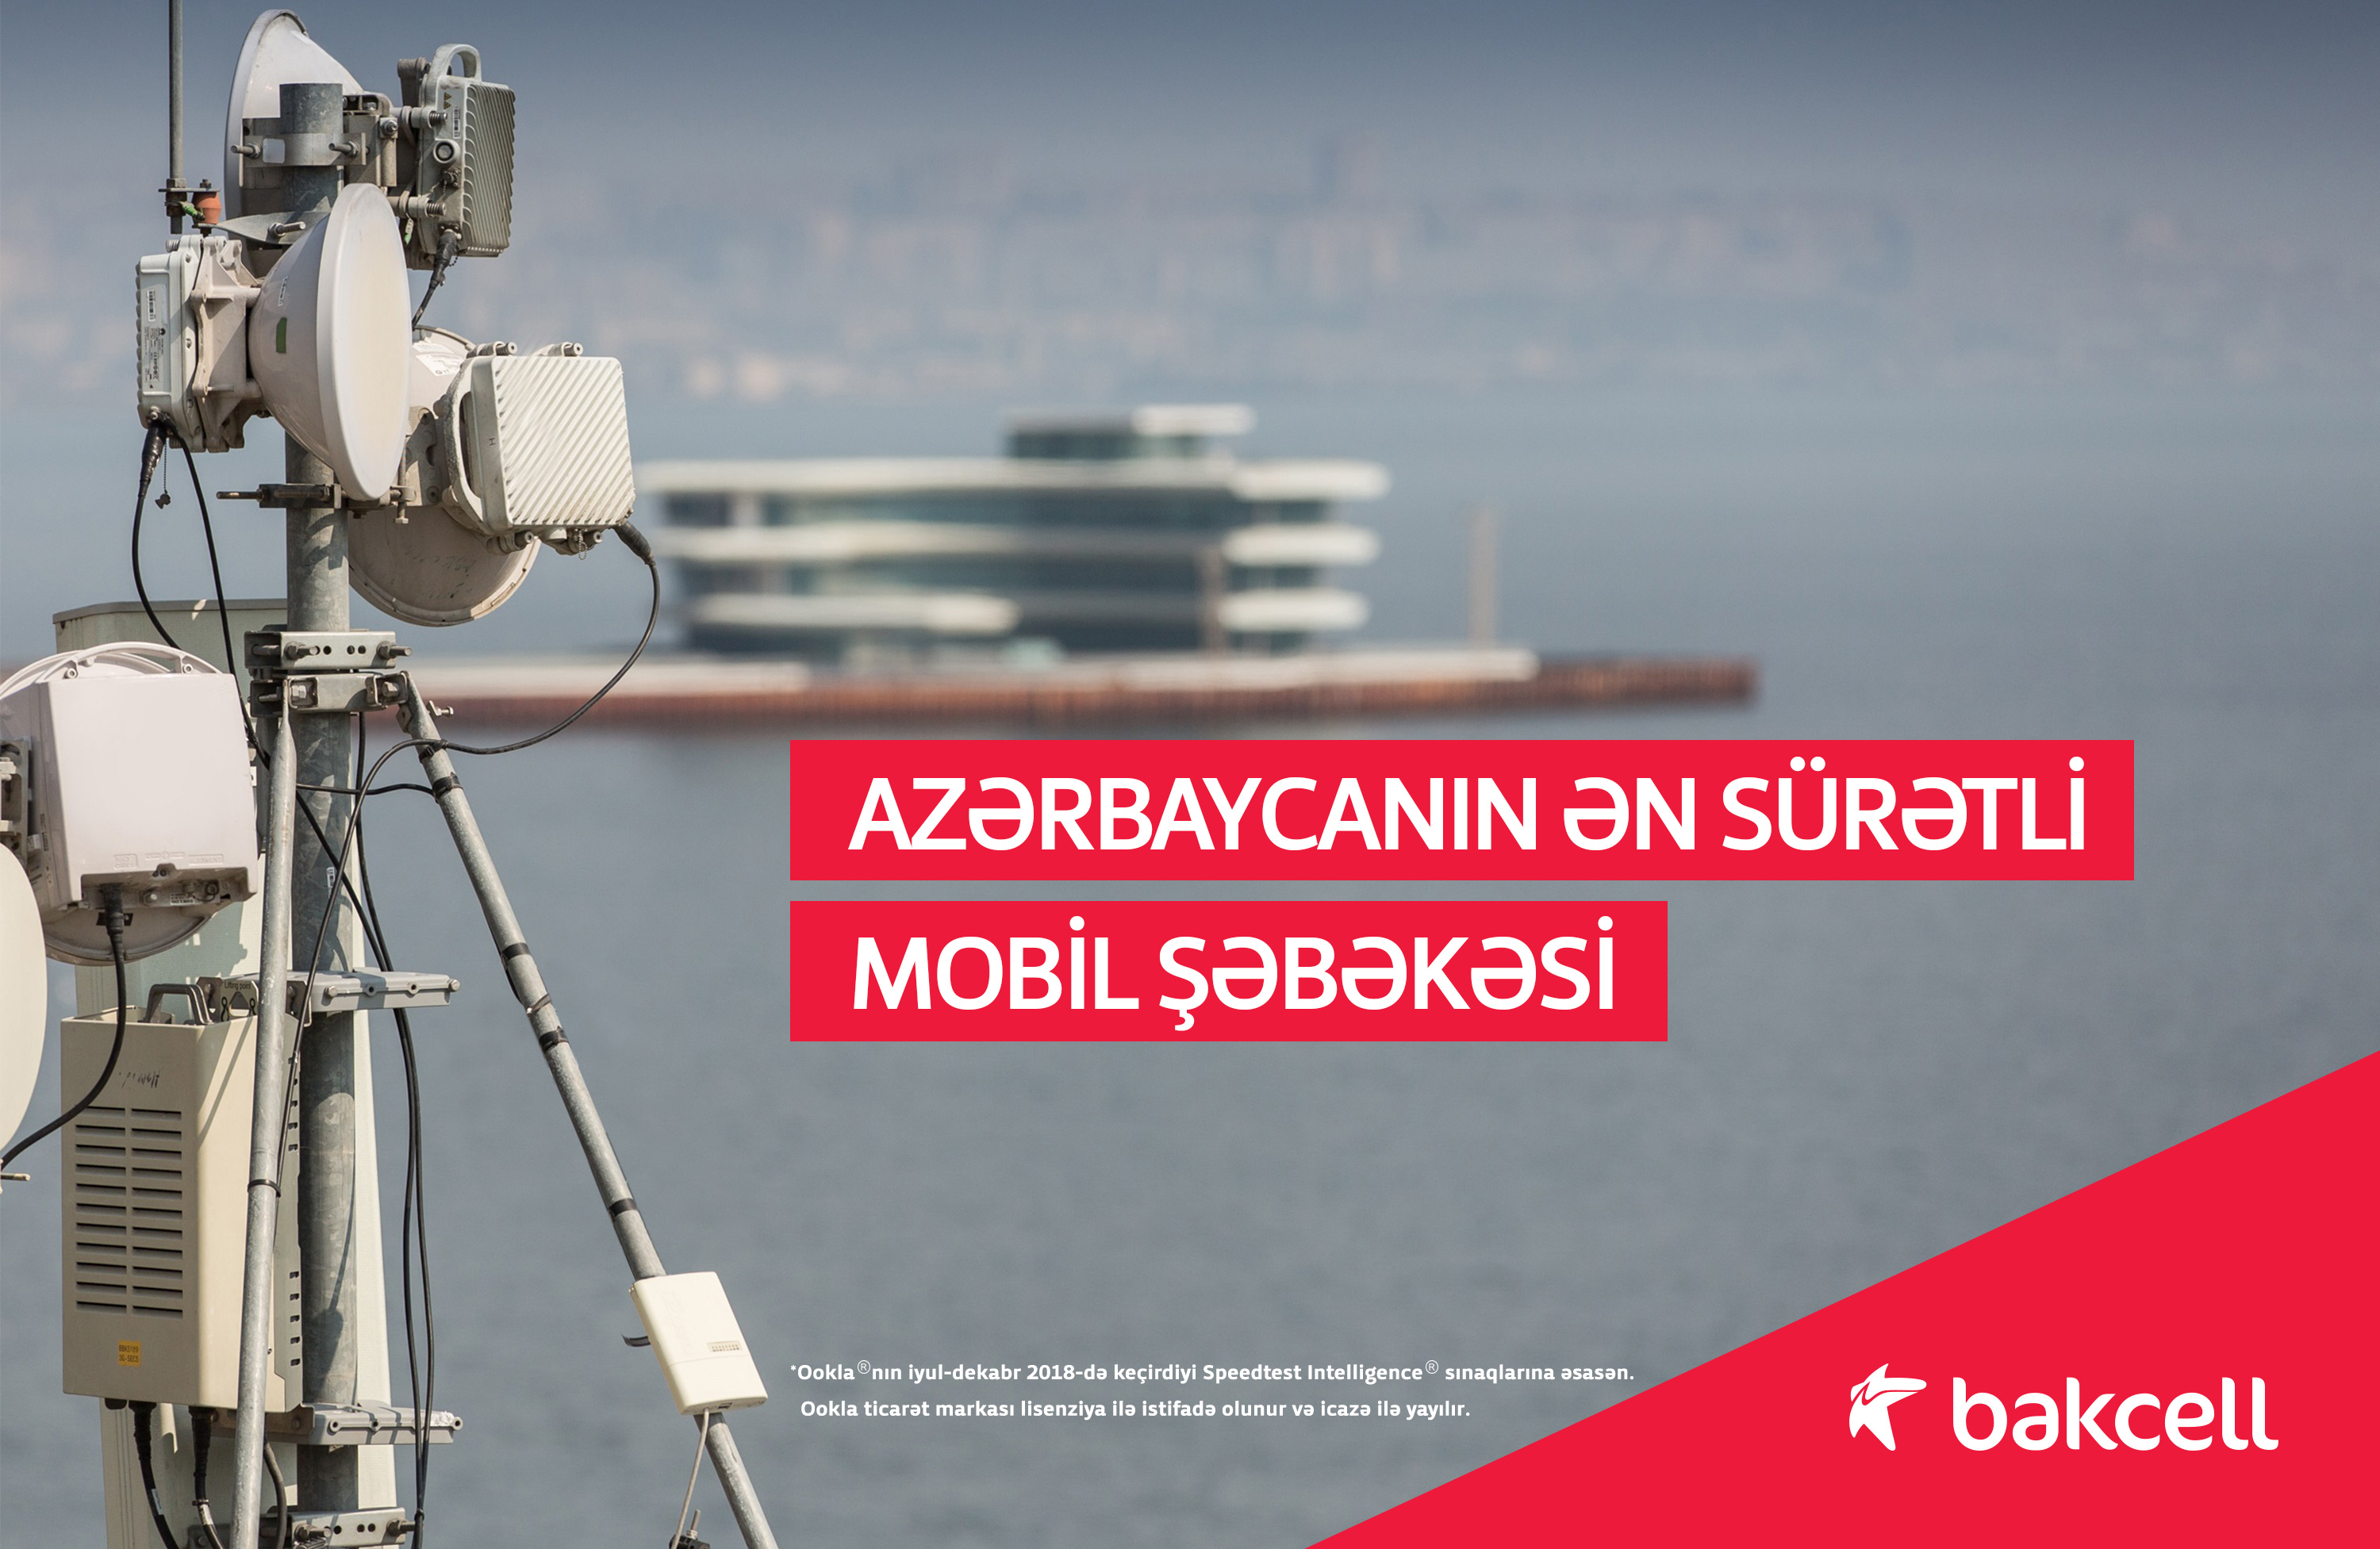 Компания Bakcell в кратчайшие сроки осуществила самое крупномасштабное в Азербайджане развертывание сети LTE